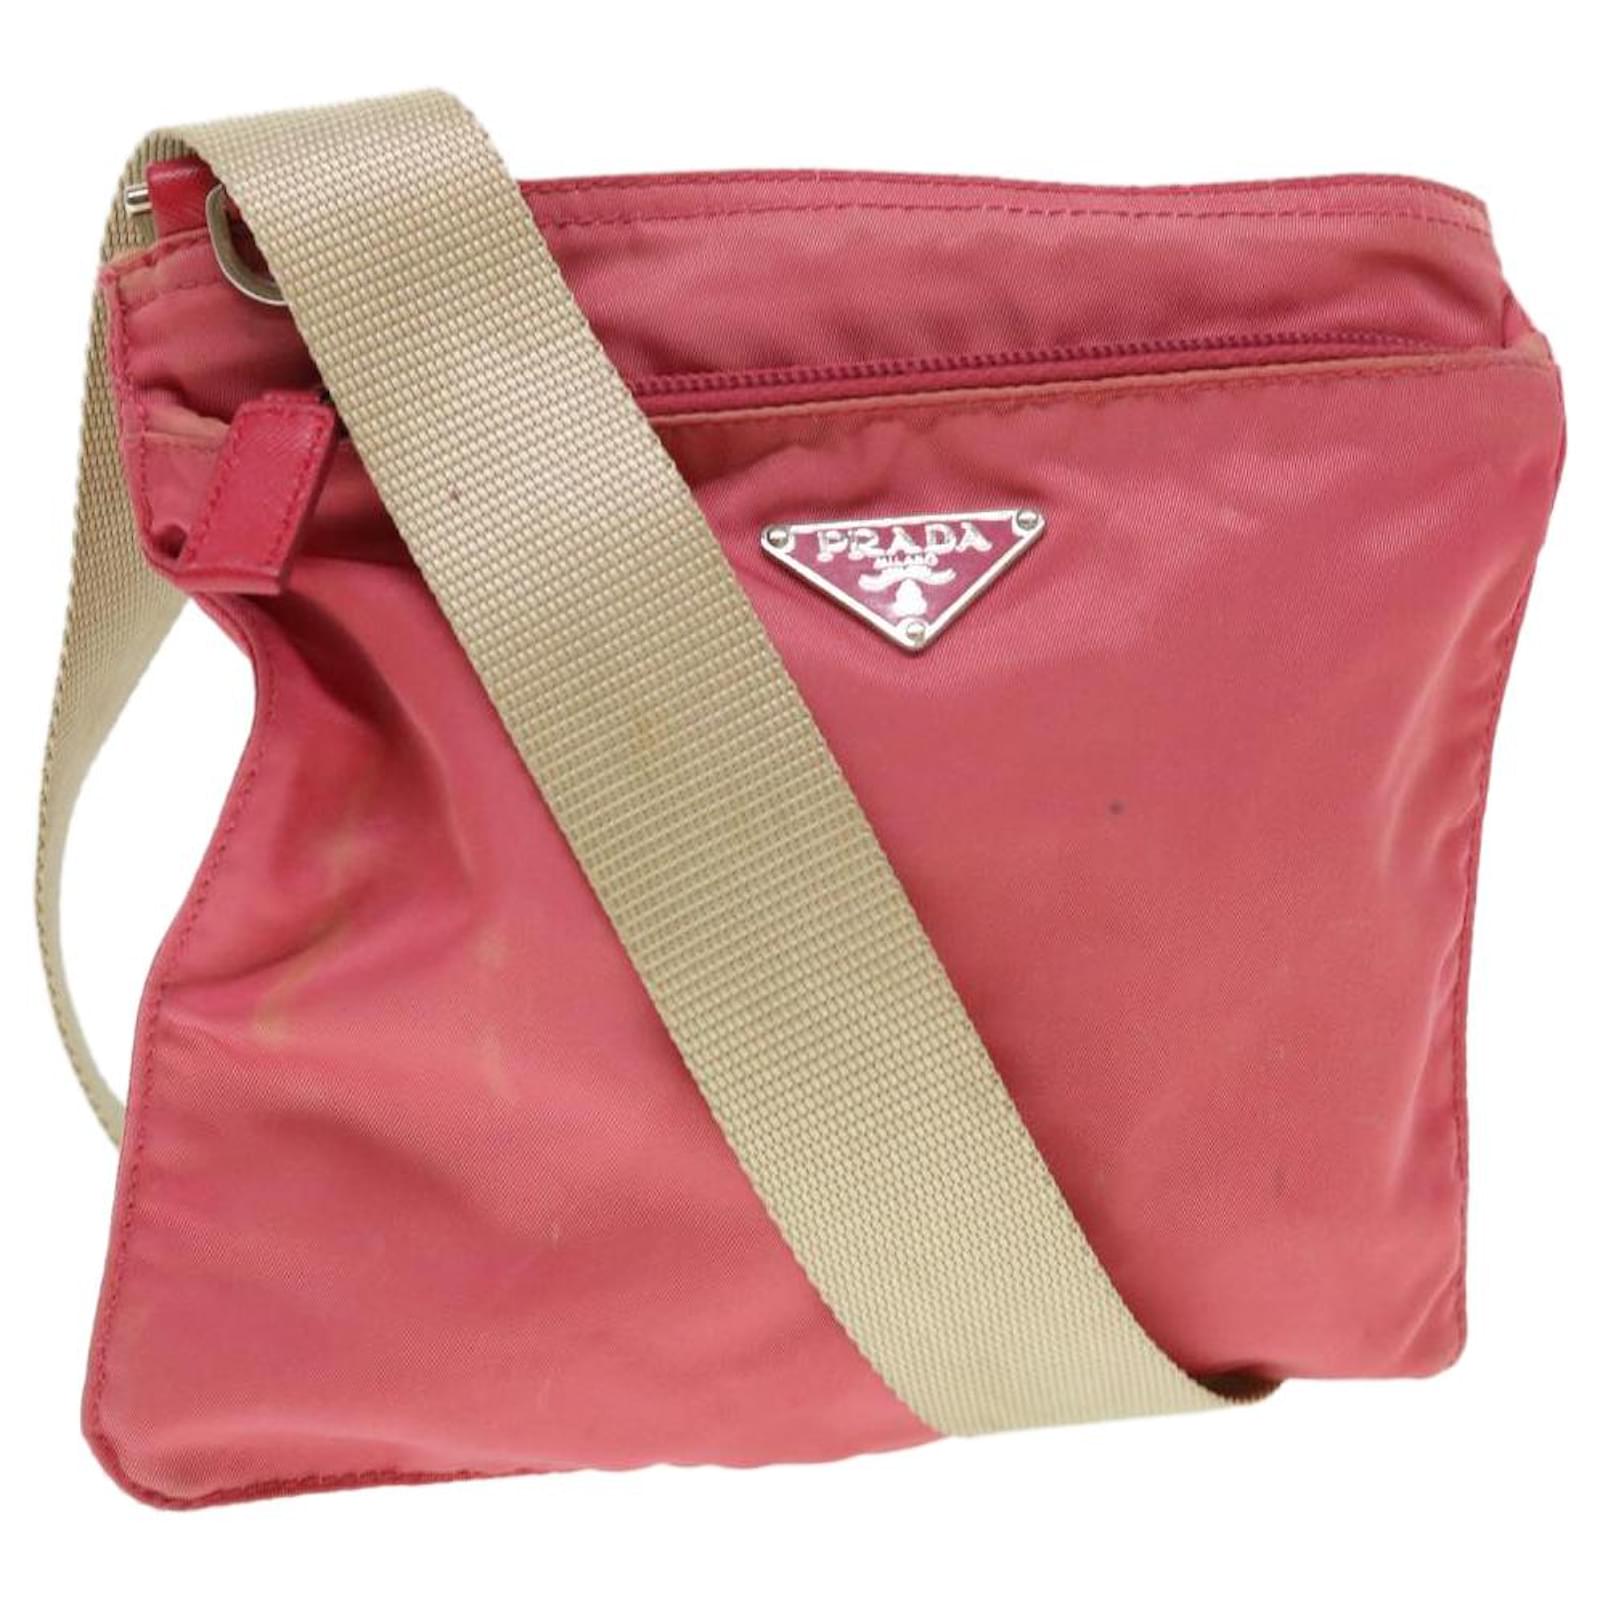 Prada, Bags, Pink Prada Bag